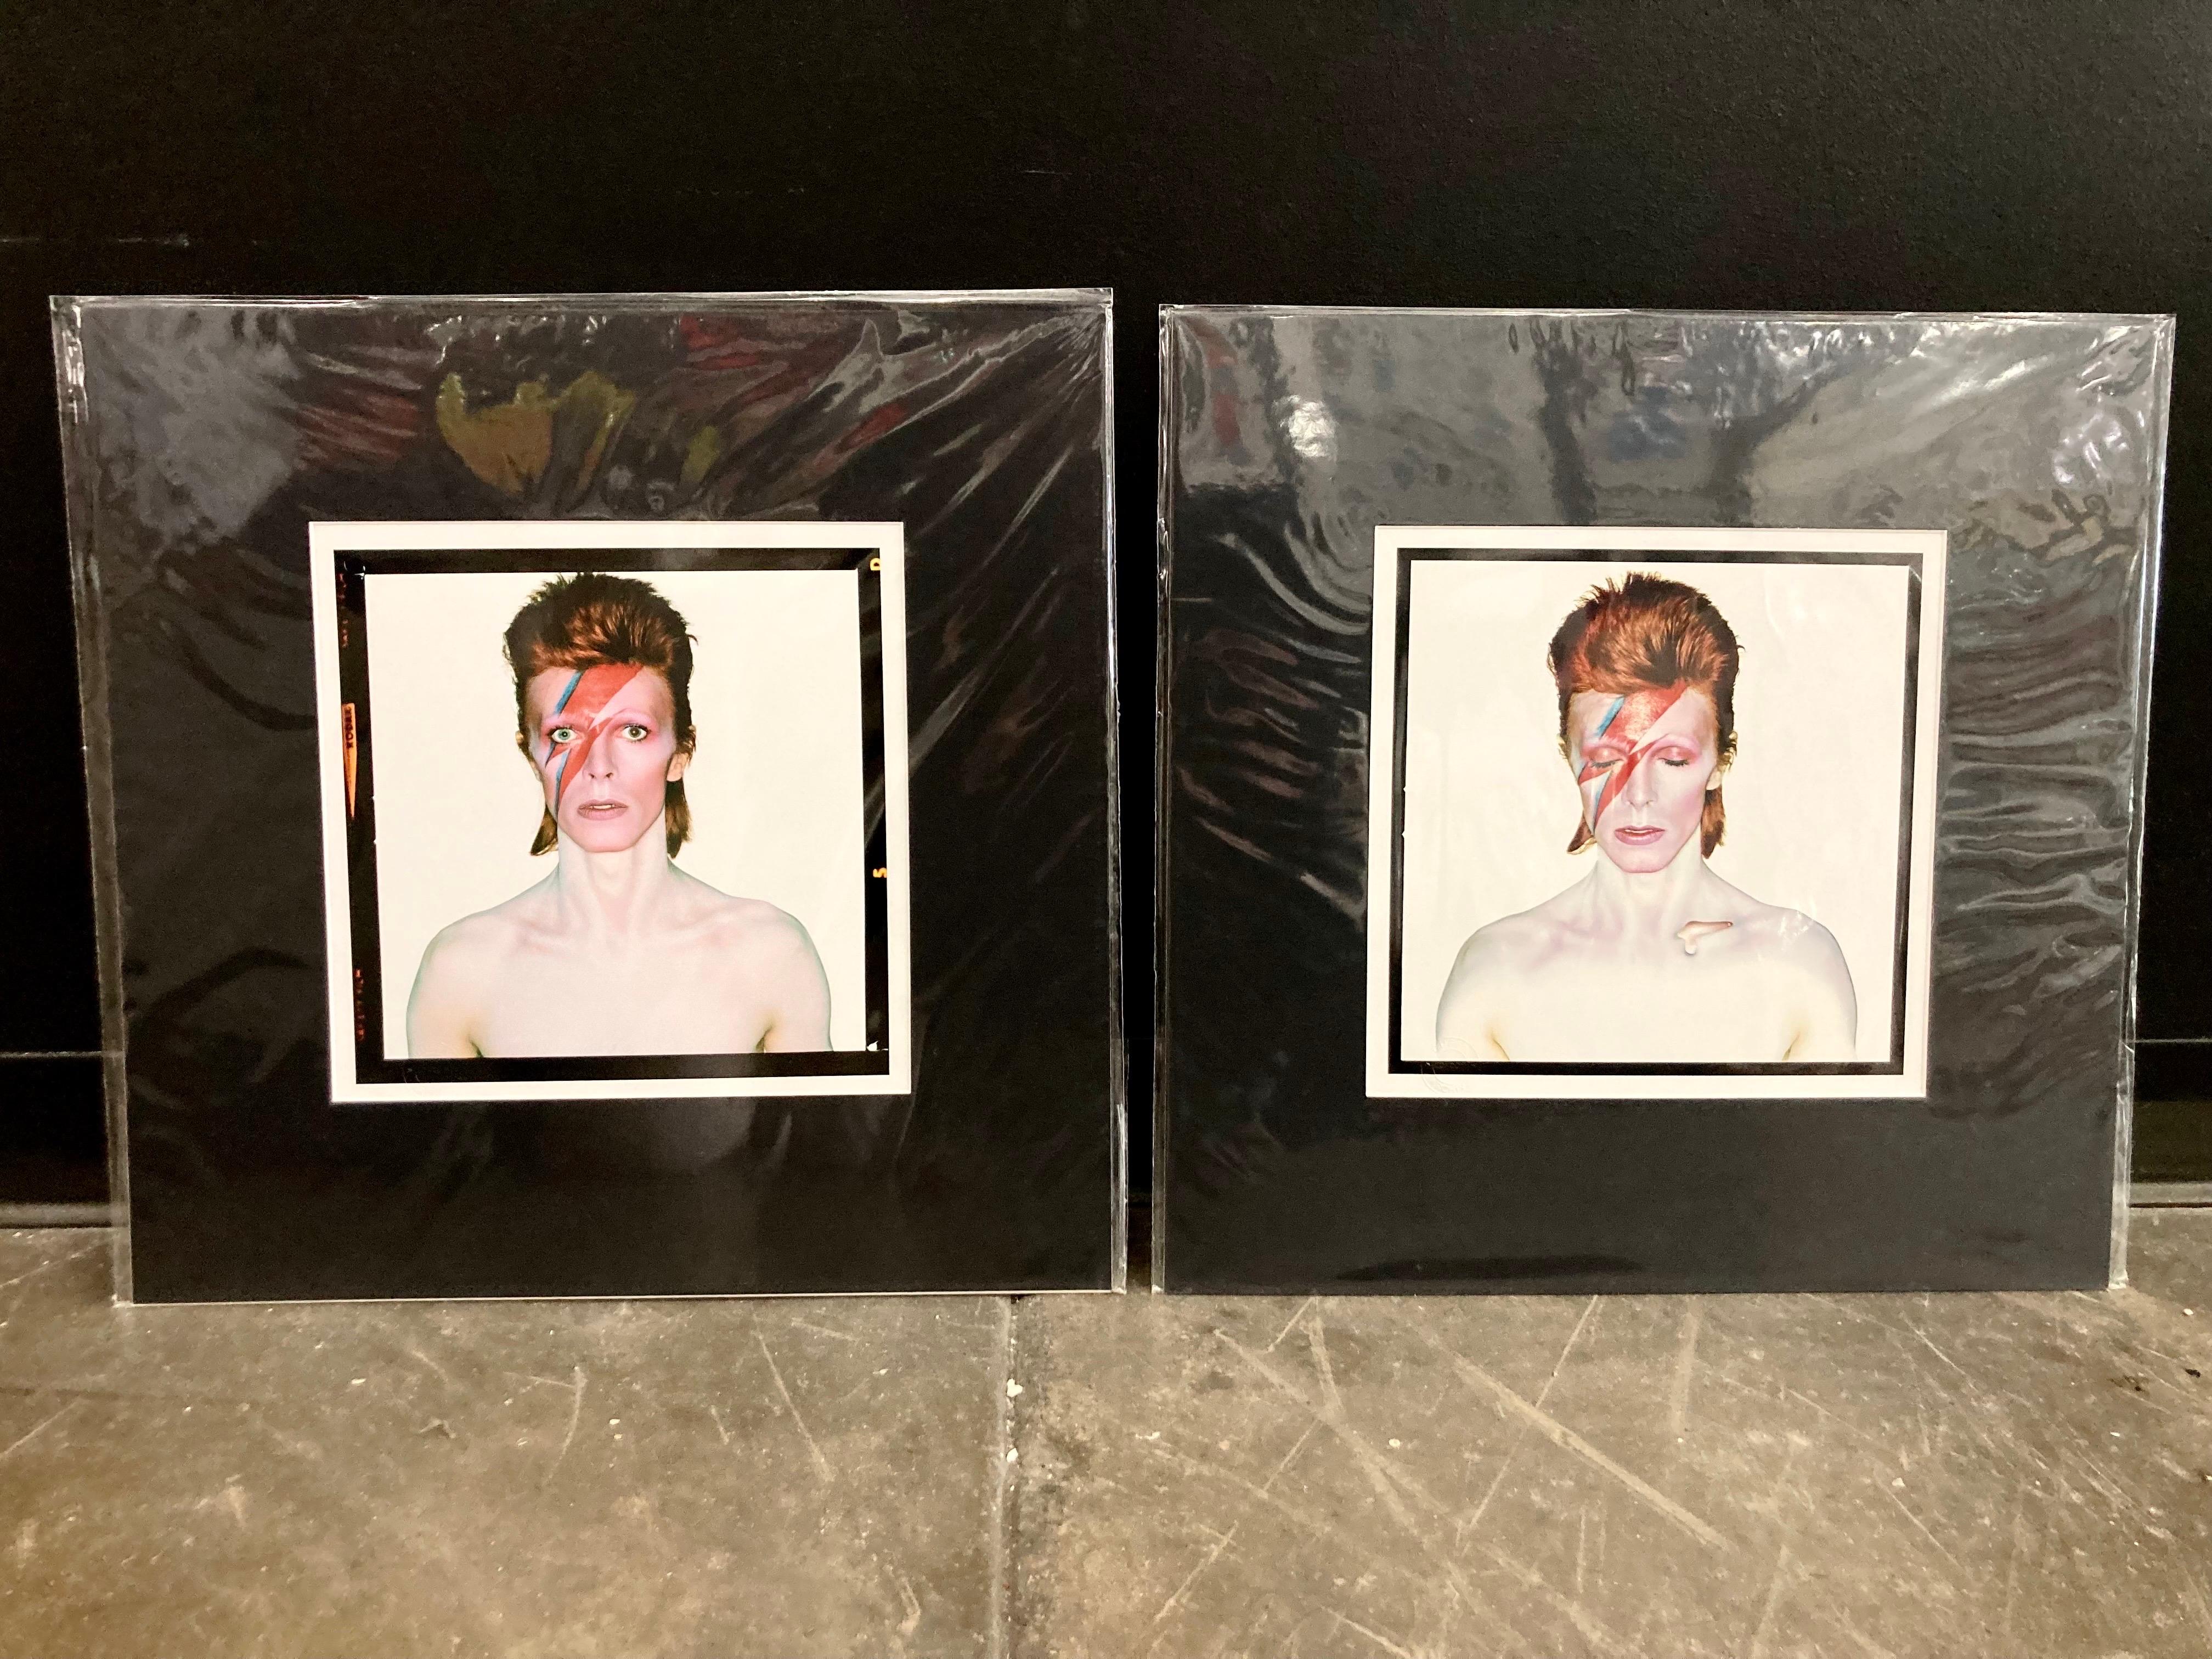 Lot de 2 reproductions de pochettes d'albums de David Bowie Aladdin Sane 